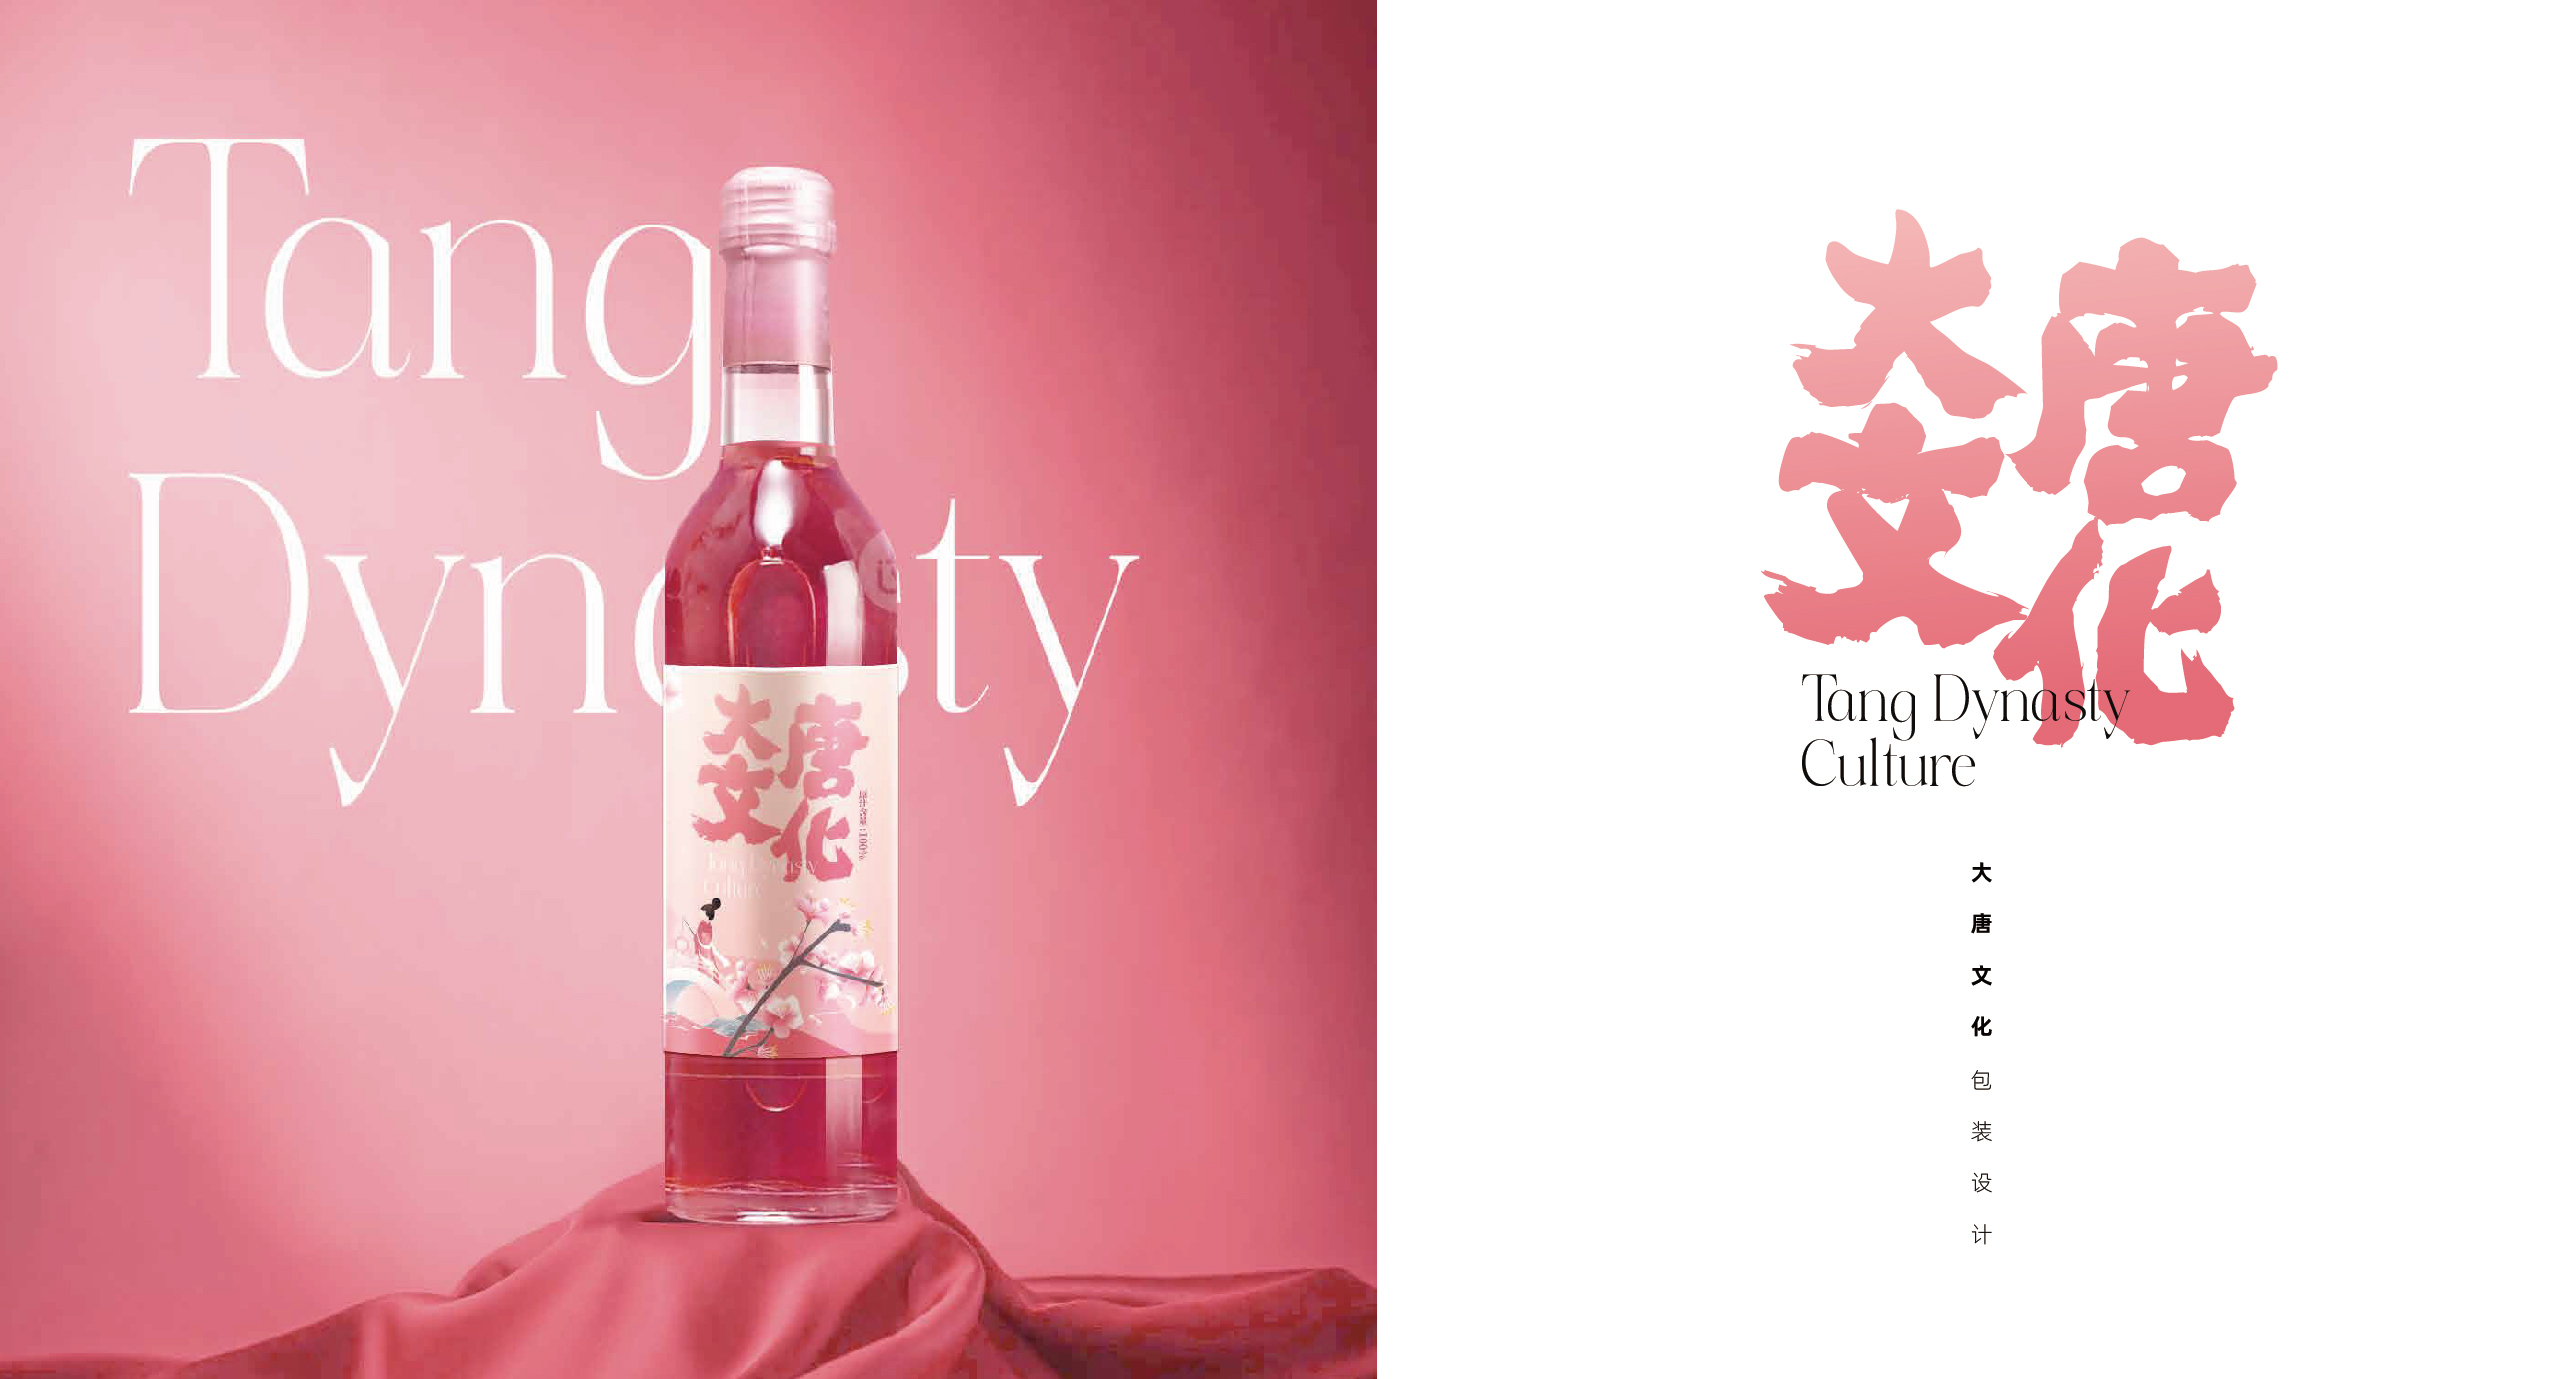 大唐文化陕西文创旅游纪念品包装设计红酒瓶贴设计案例文创